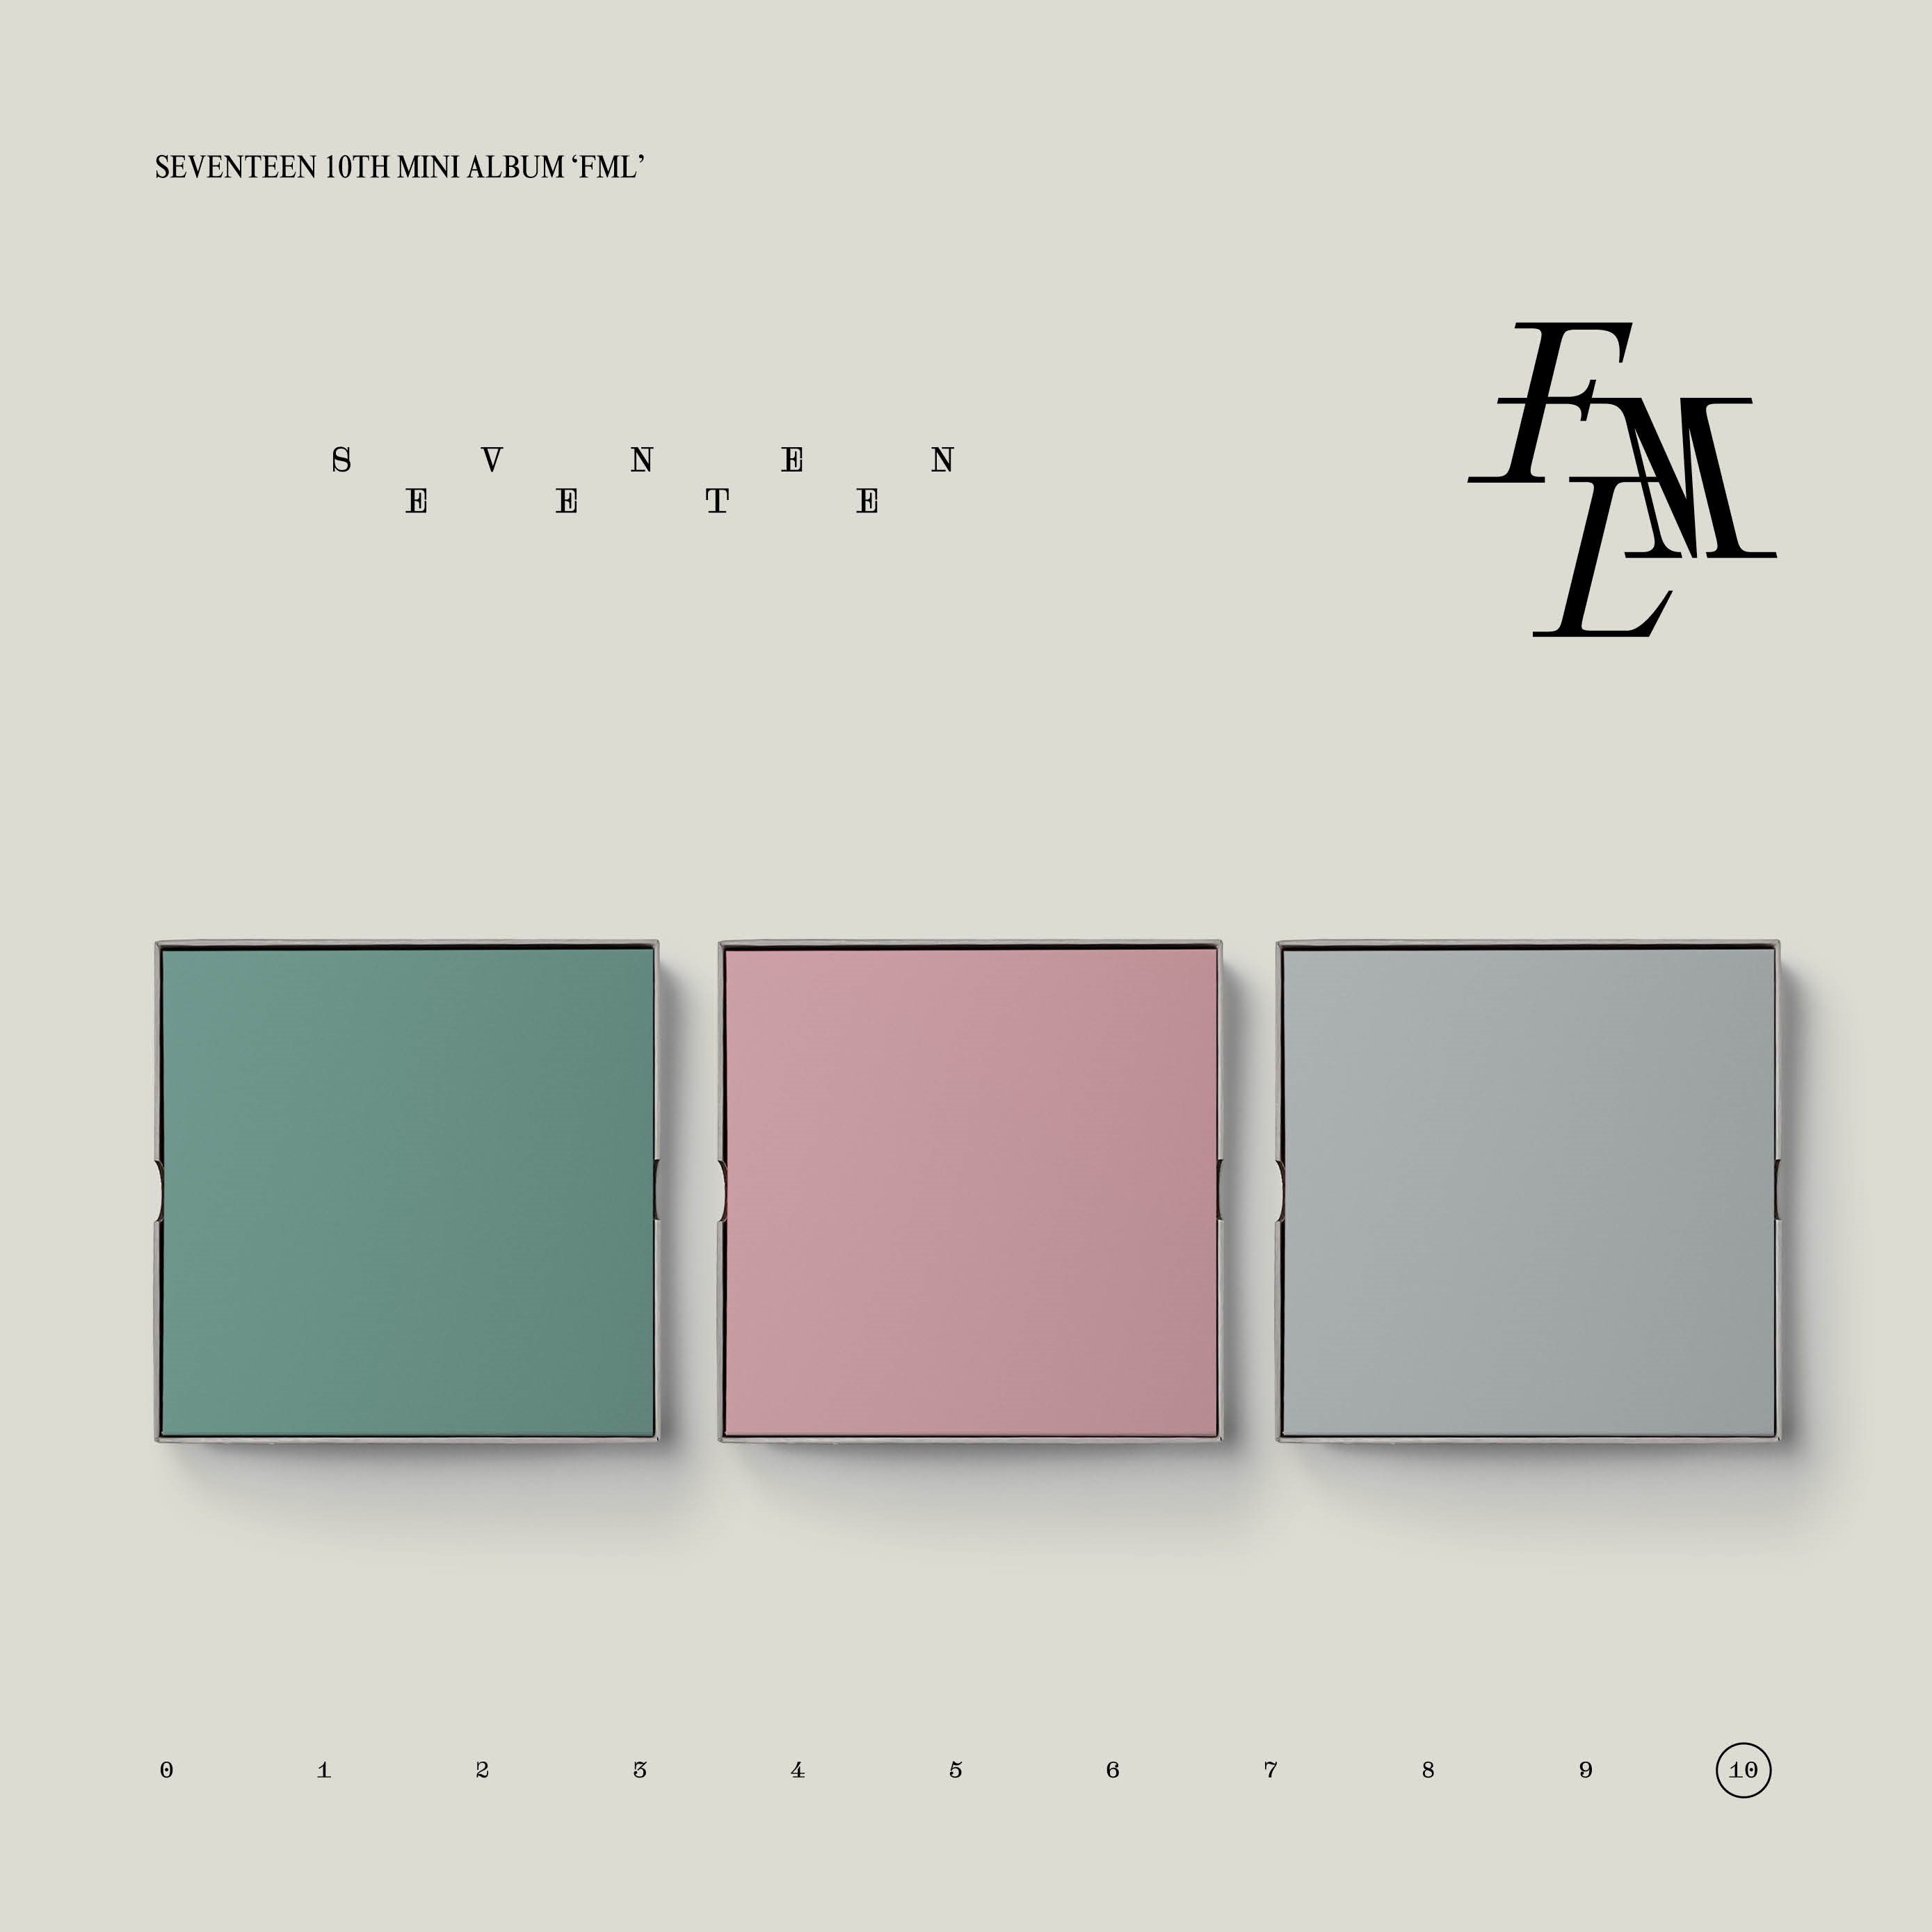 [全款 每套补15r 限量200套 补贴专] [Ktown4u Special Gift] [3CD SET] SEVENTEEN - 10th Mini Album [FML]_尹净汉的护花小分队